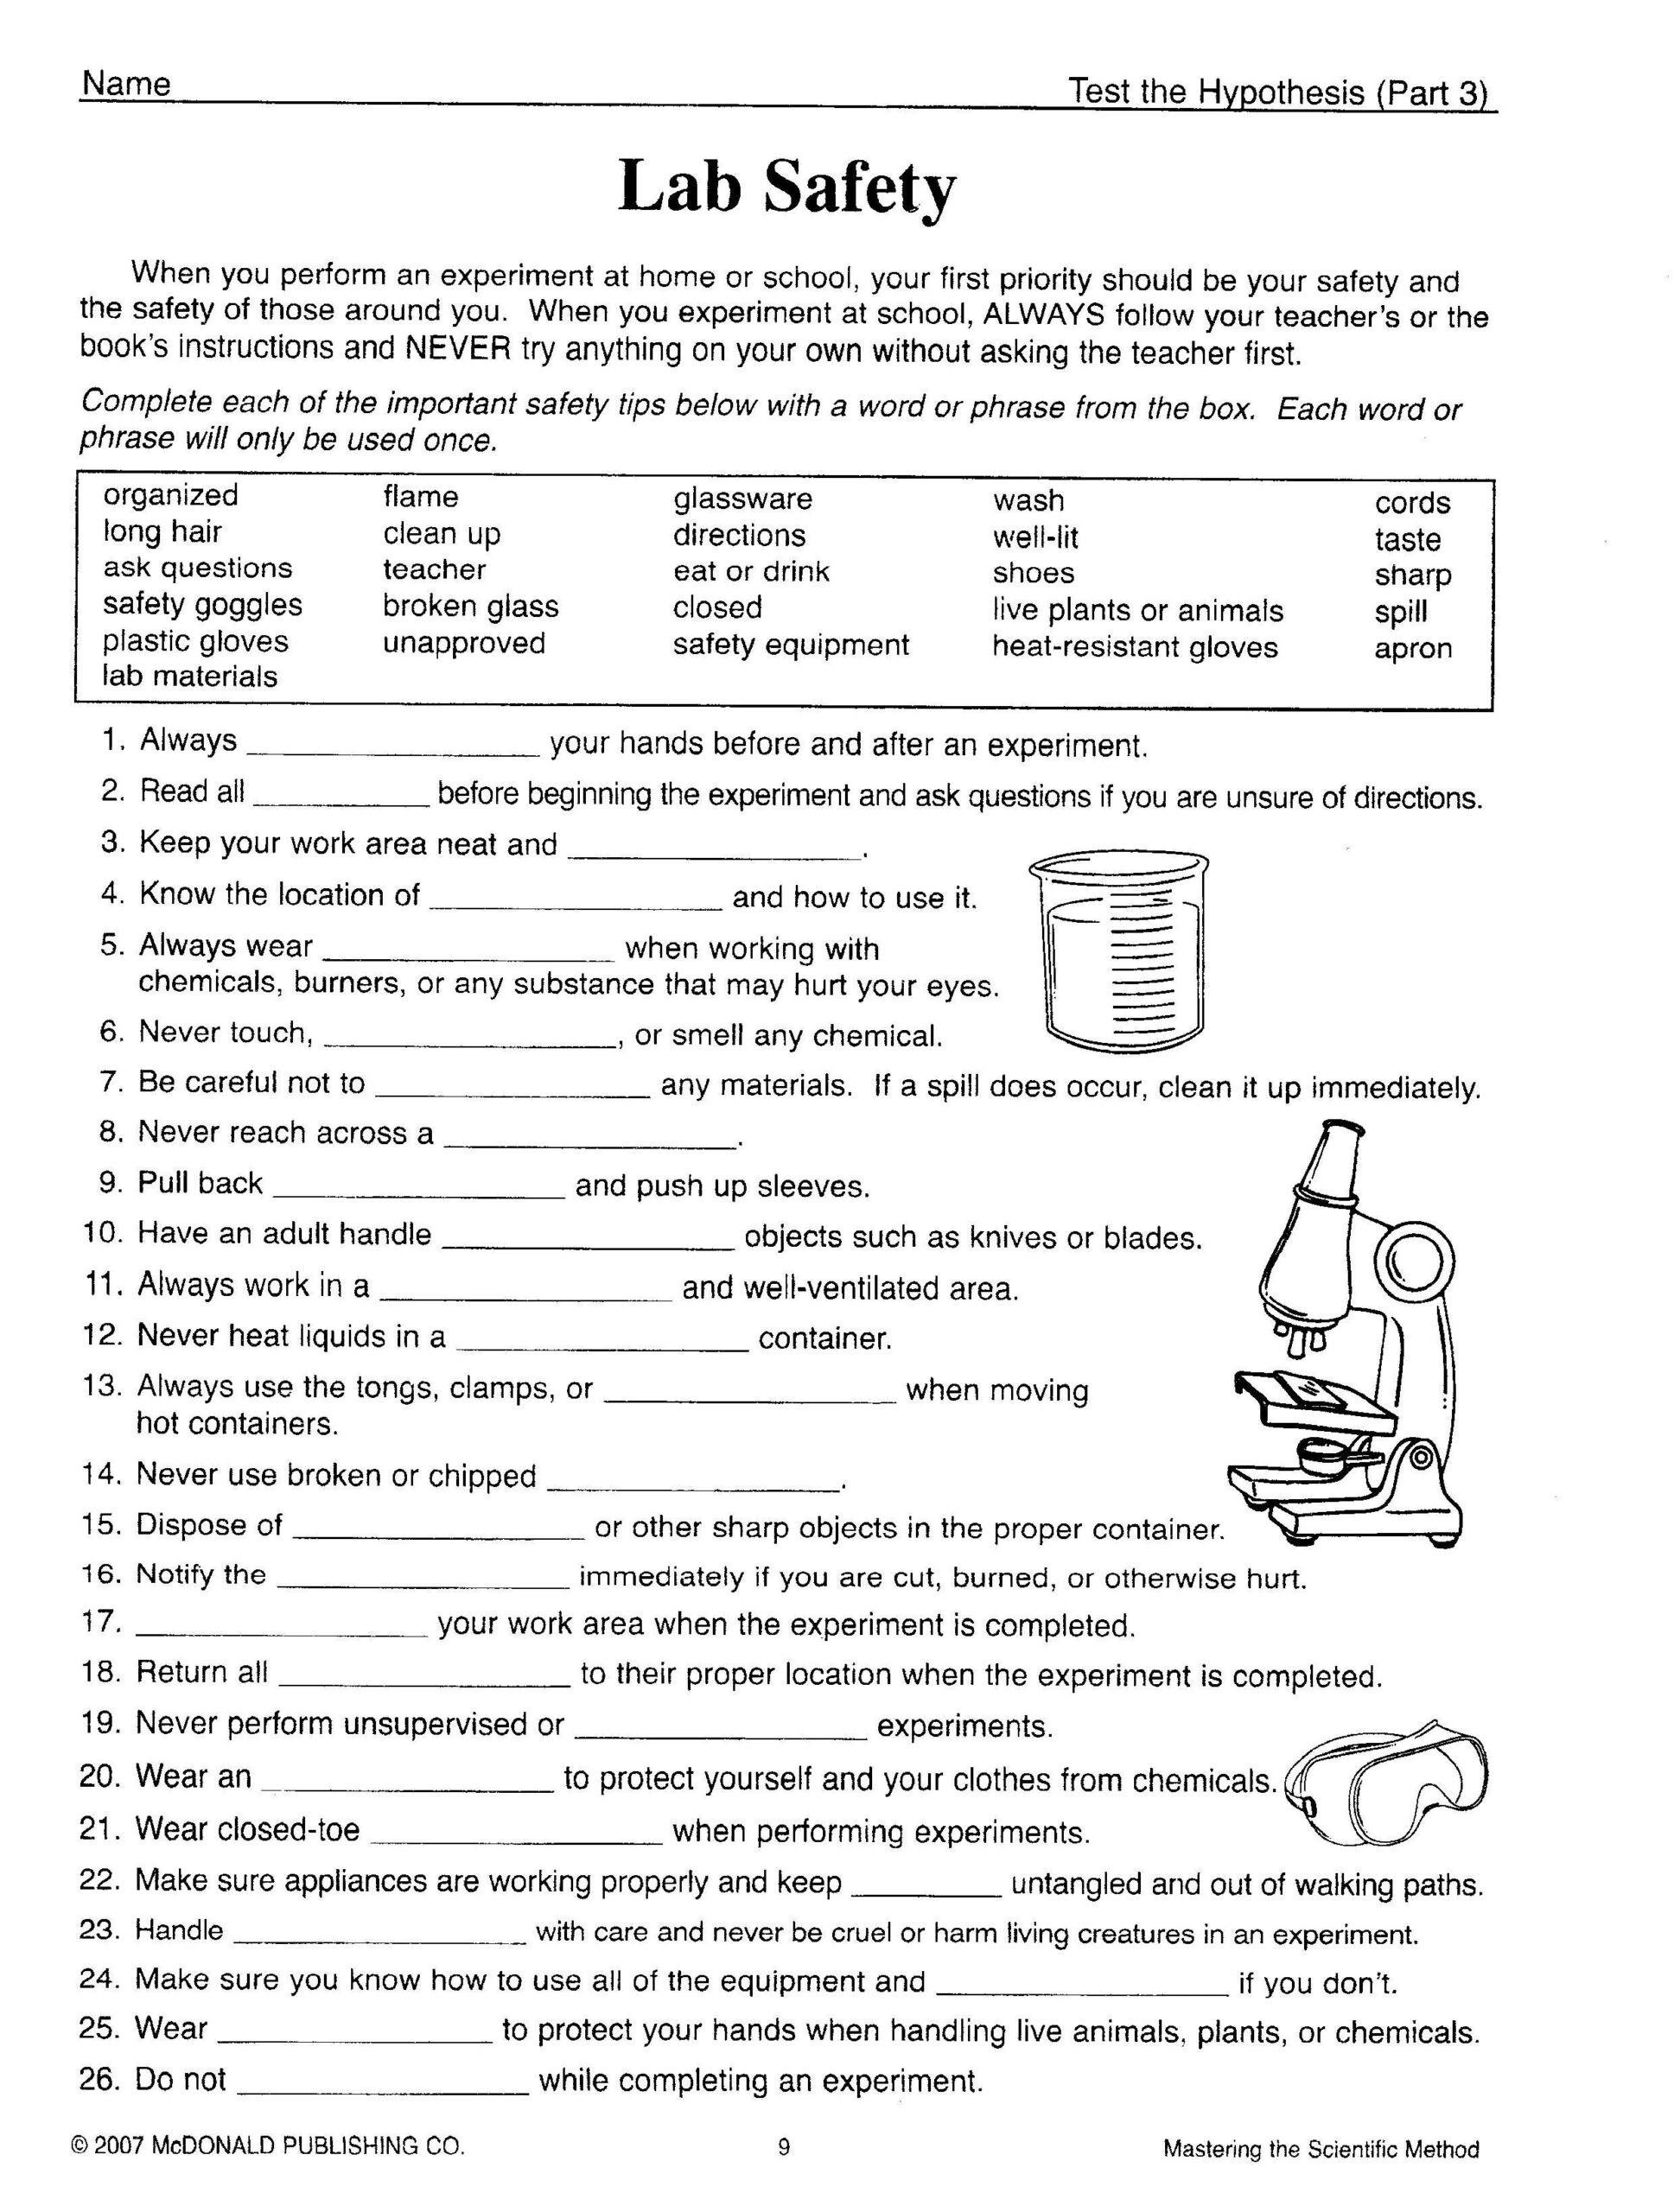 Scientific Method Worksheet Elementary Science tools Worksheet 4th Grade Fresh Kids Worksheets